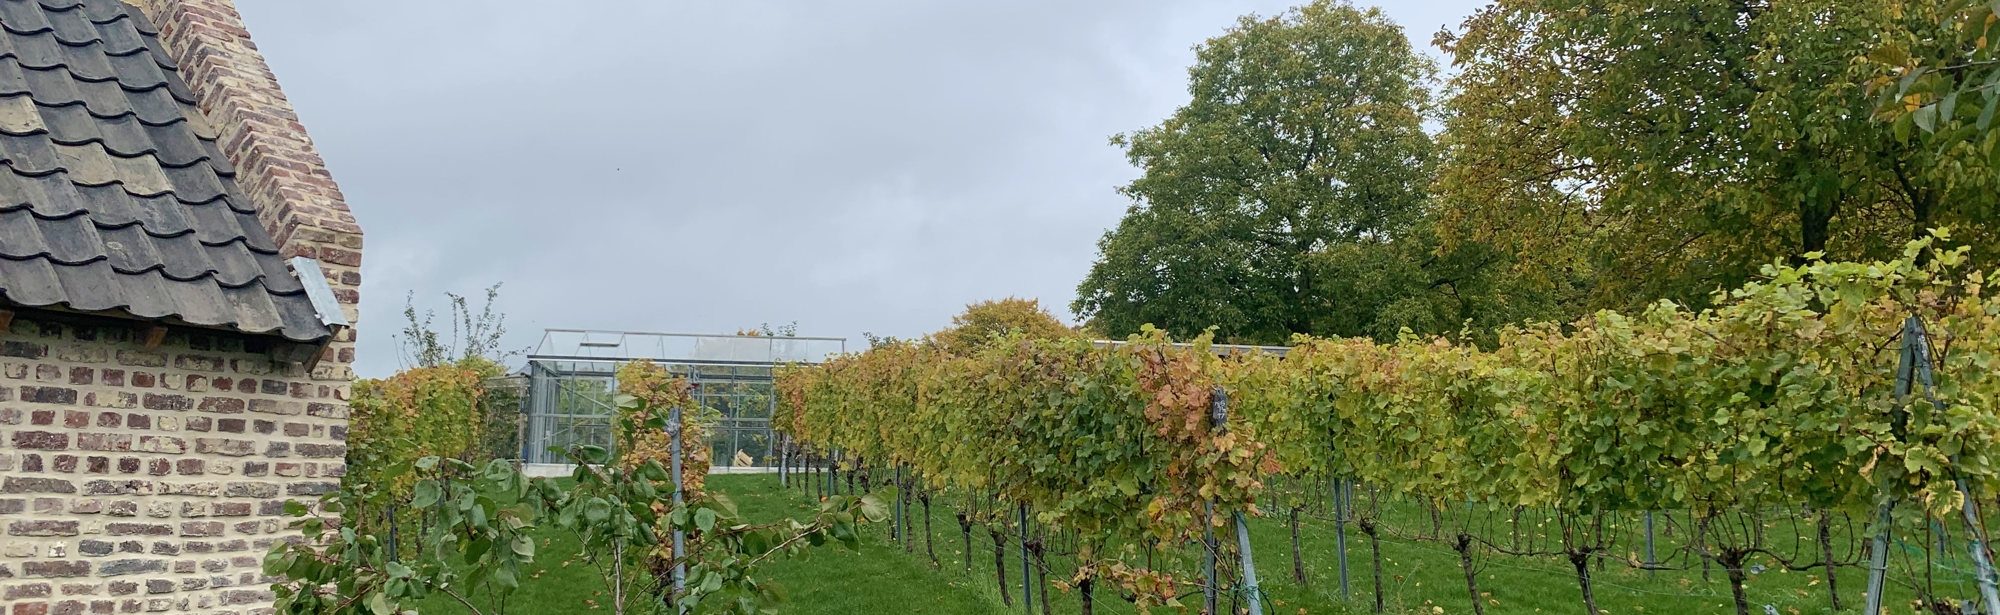 Rijen druivenstokken van Fort Sanderbout met een bakhuisje in de wijngaard